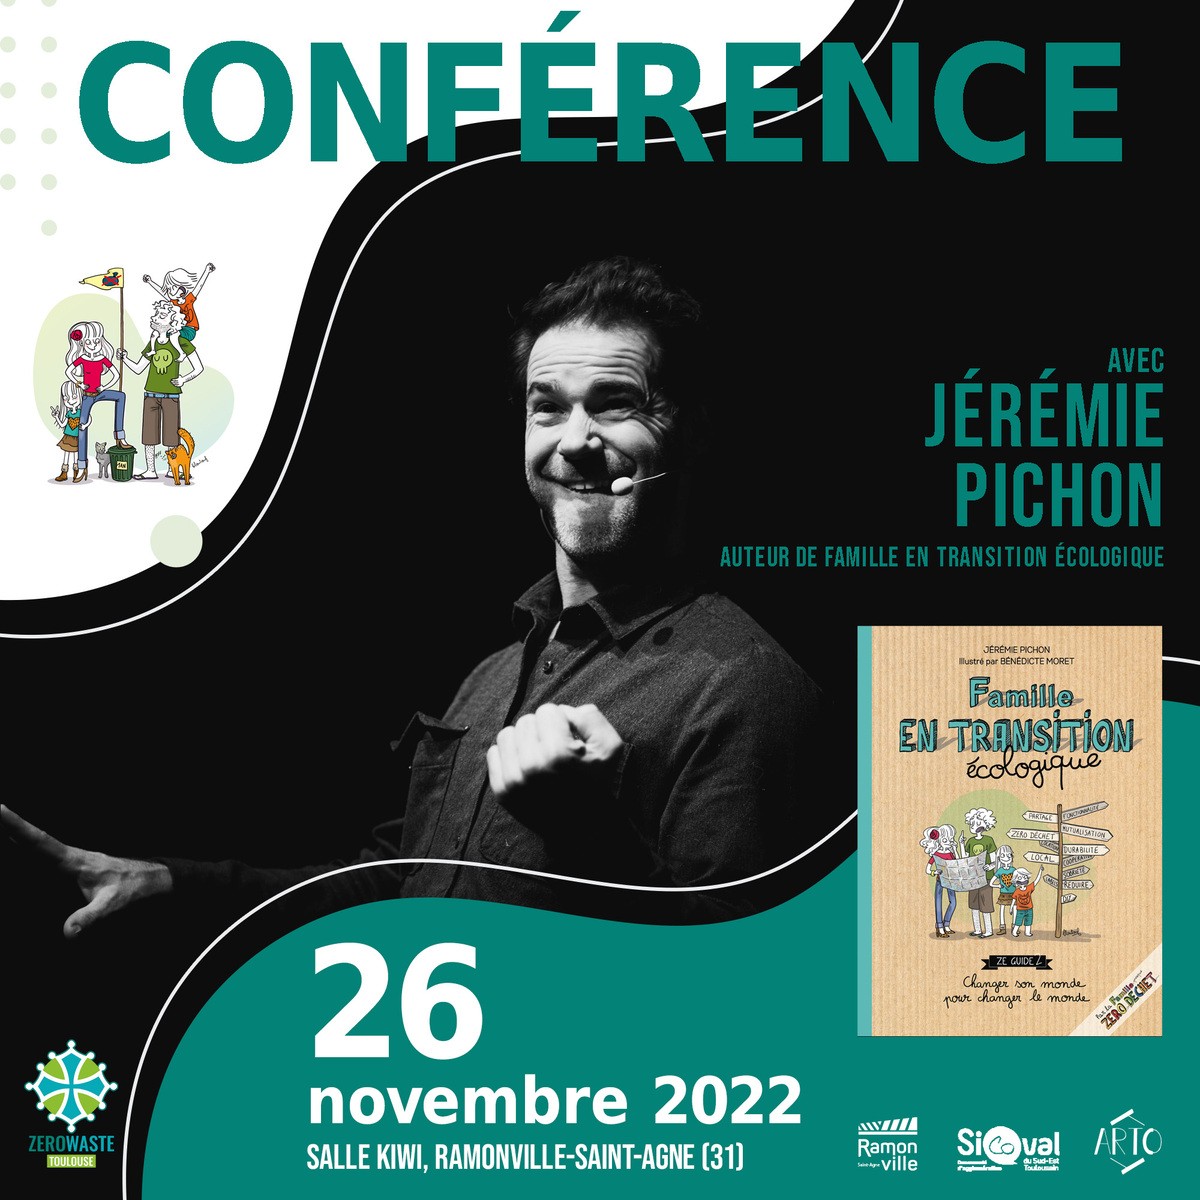 Zero Waste Toulouse, le Sicoval Arto et la mairie de Ramonville proposent la conférence de Jérémie Pichon